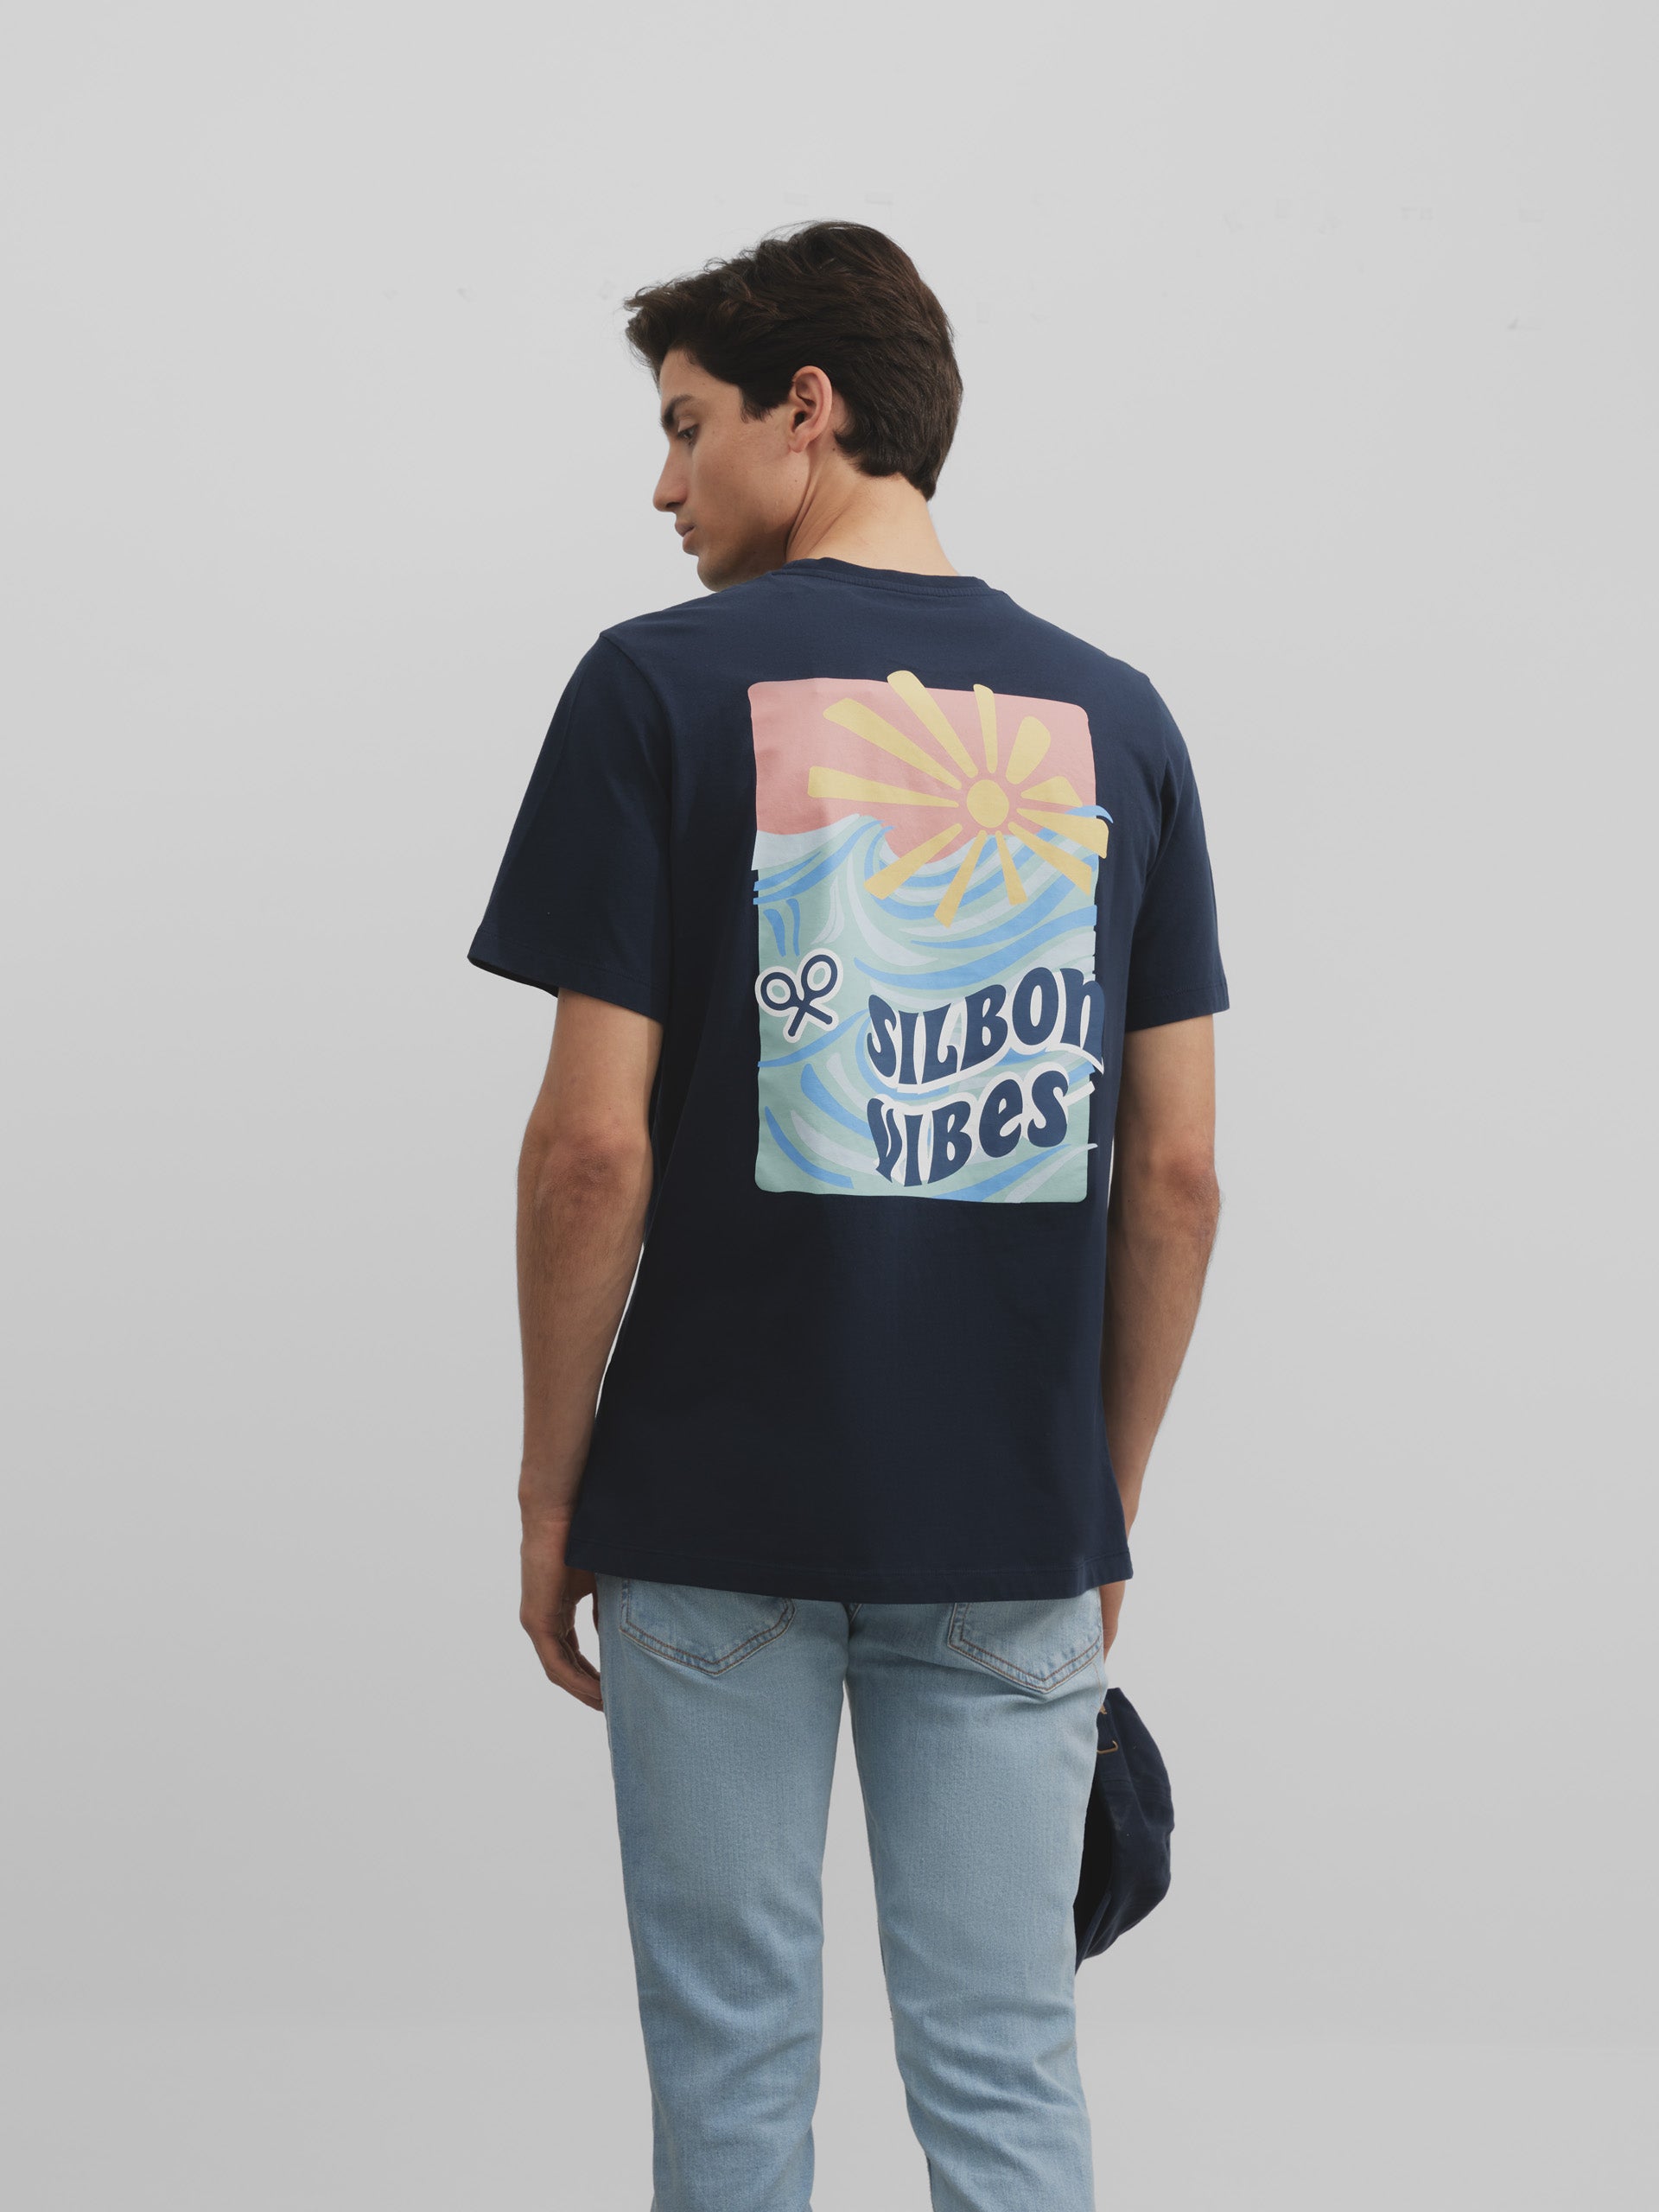 T-shirt Silbon vibes bleu marine